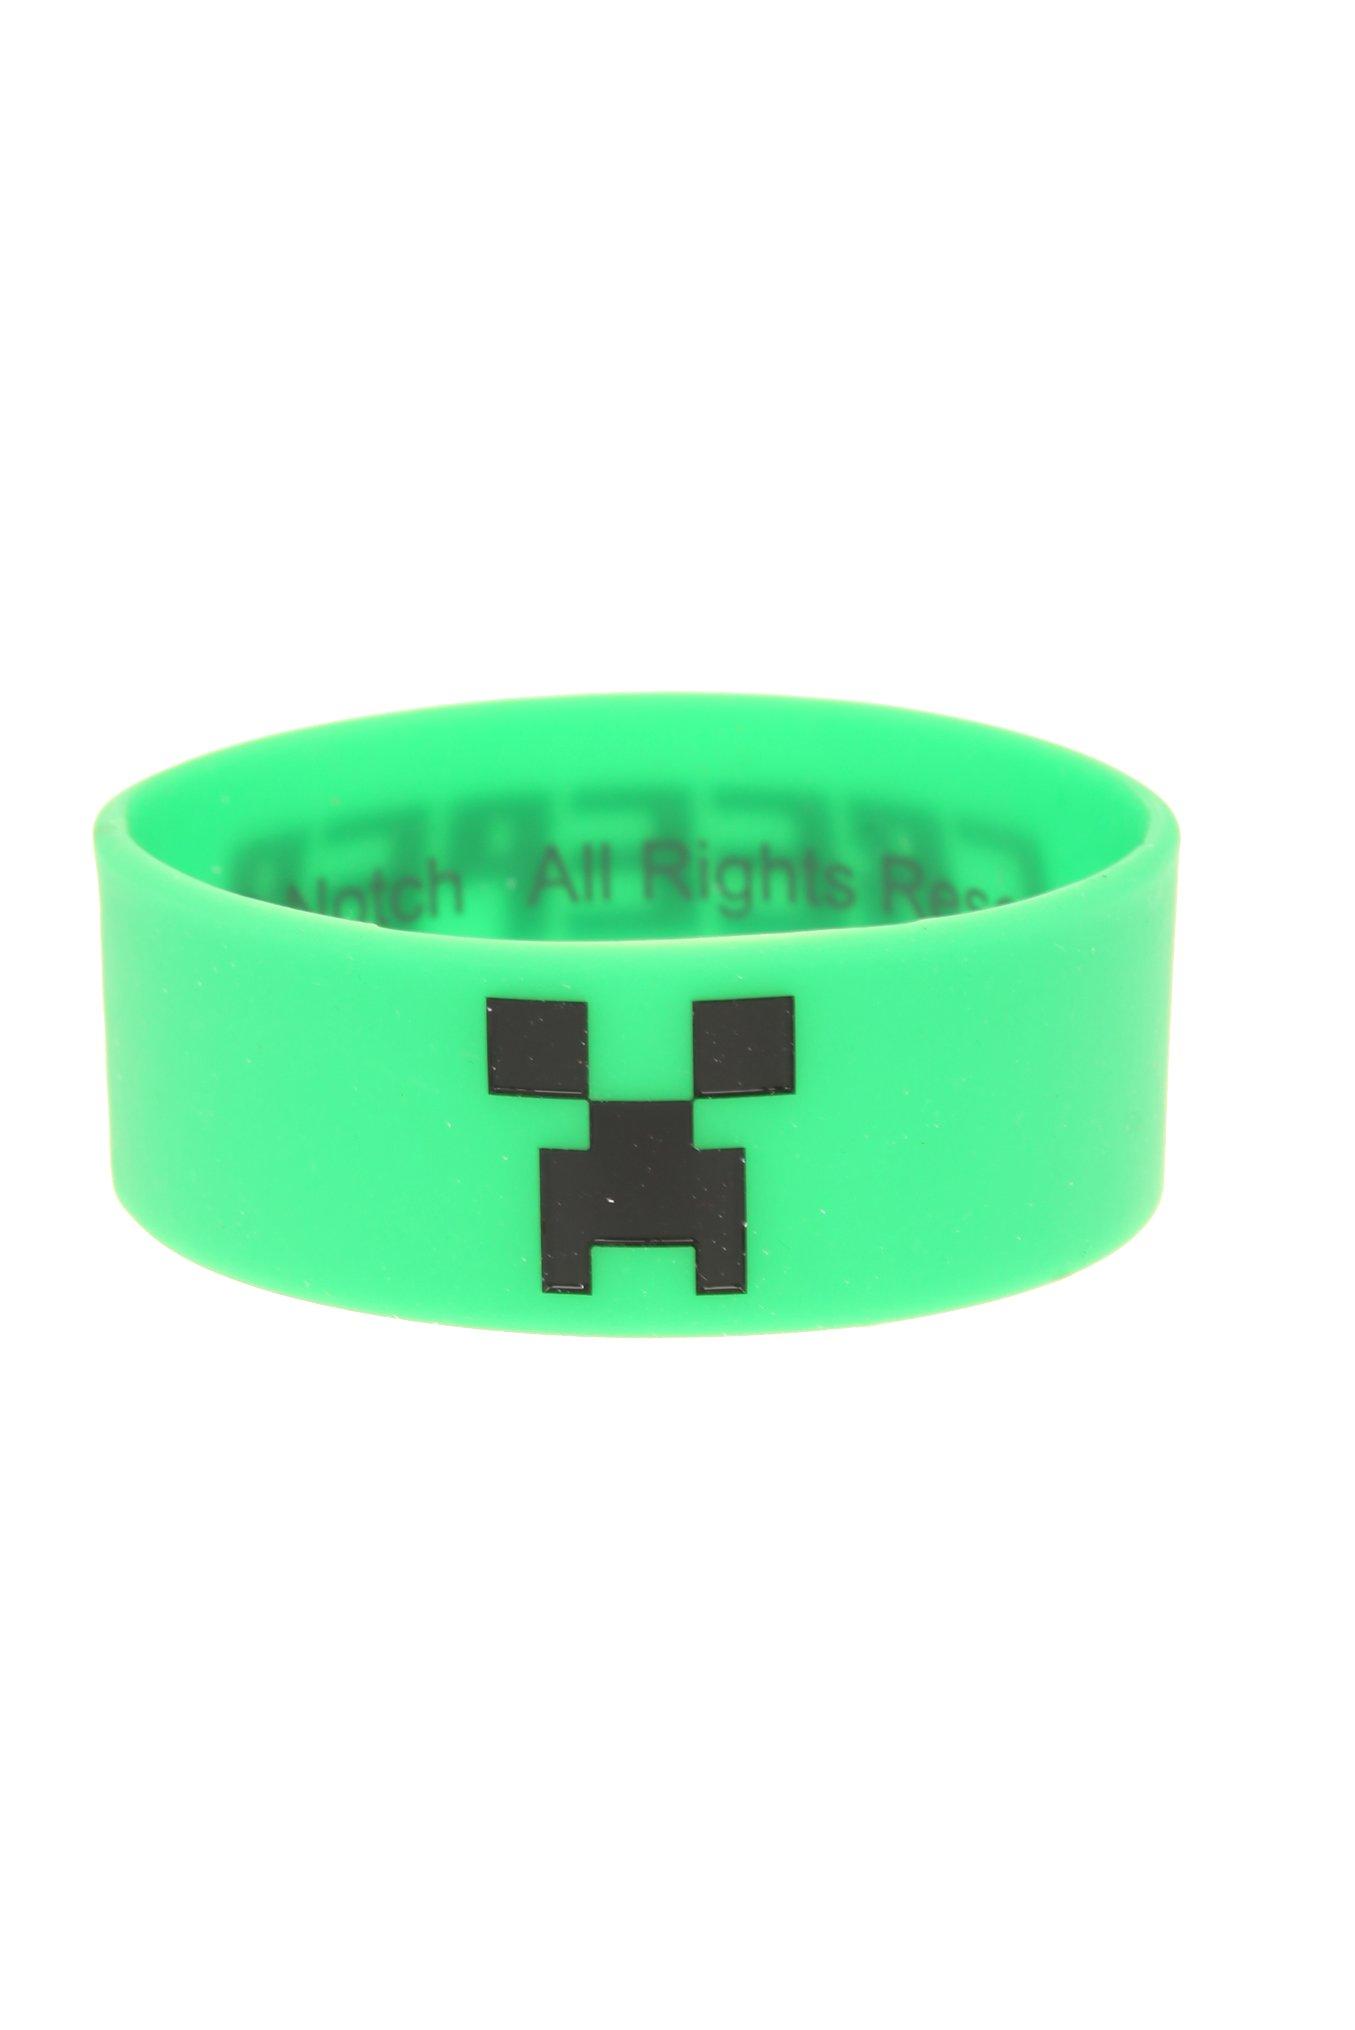 Jinx Minecraft Creeper Rubber Bracelet, , hi-res